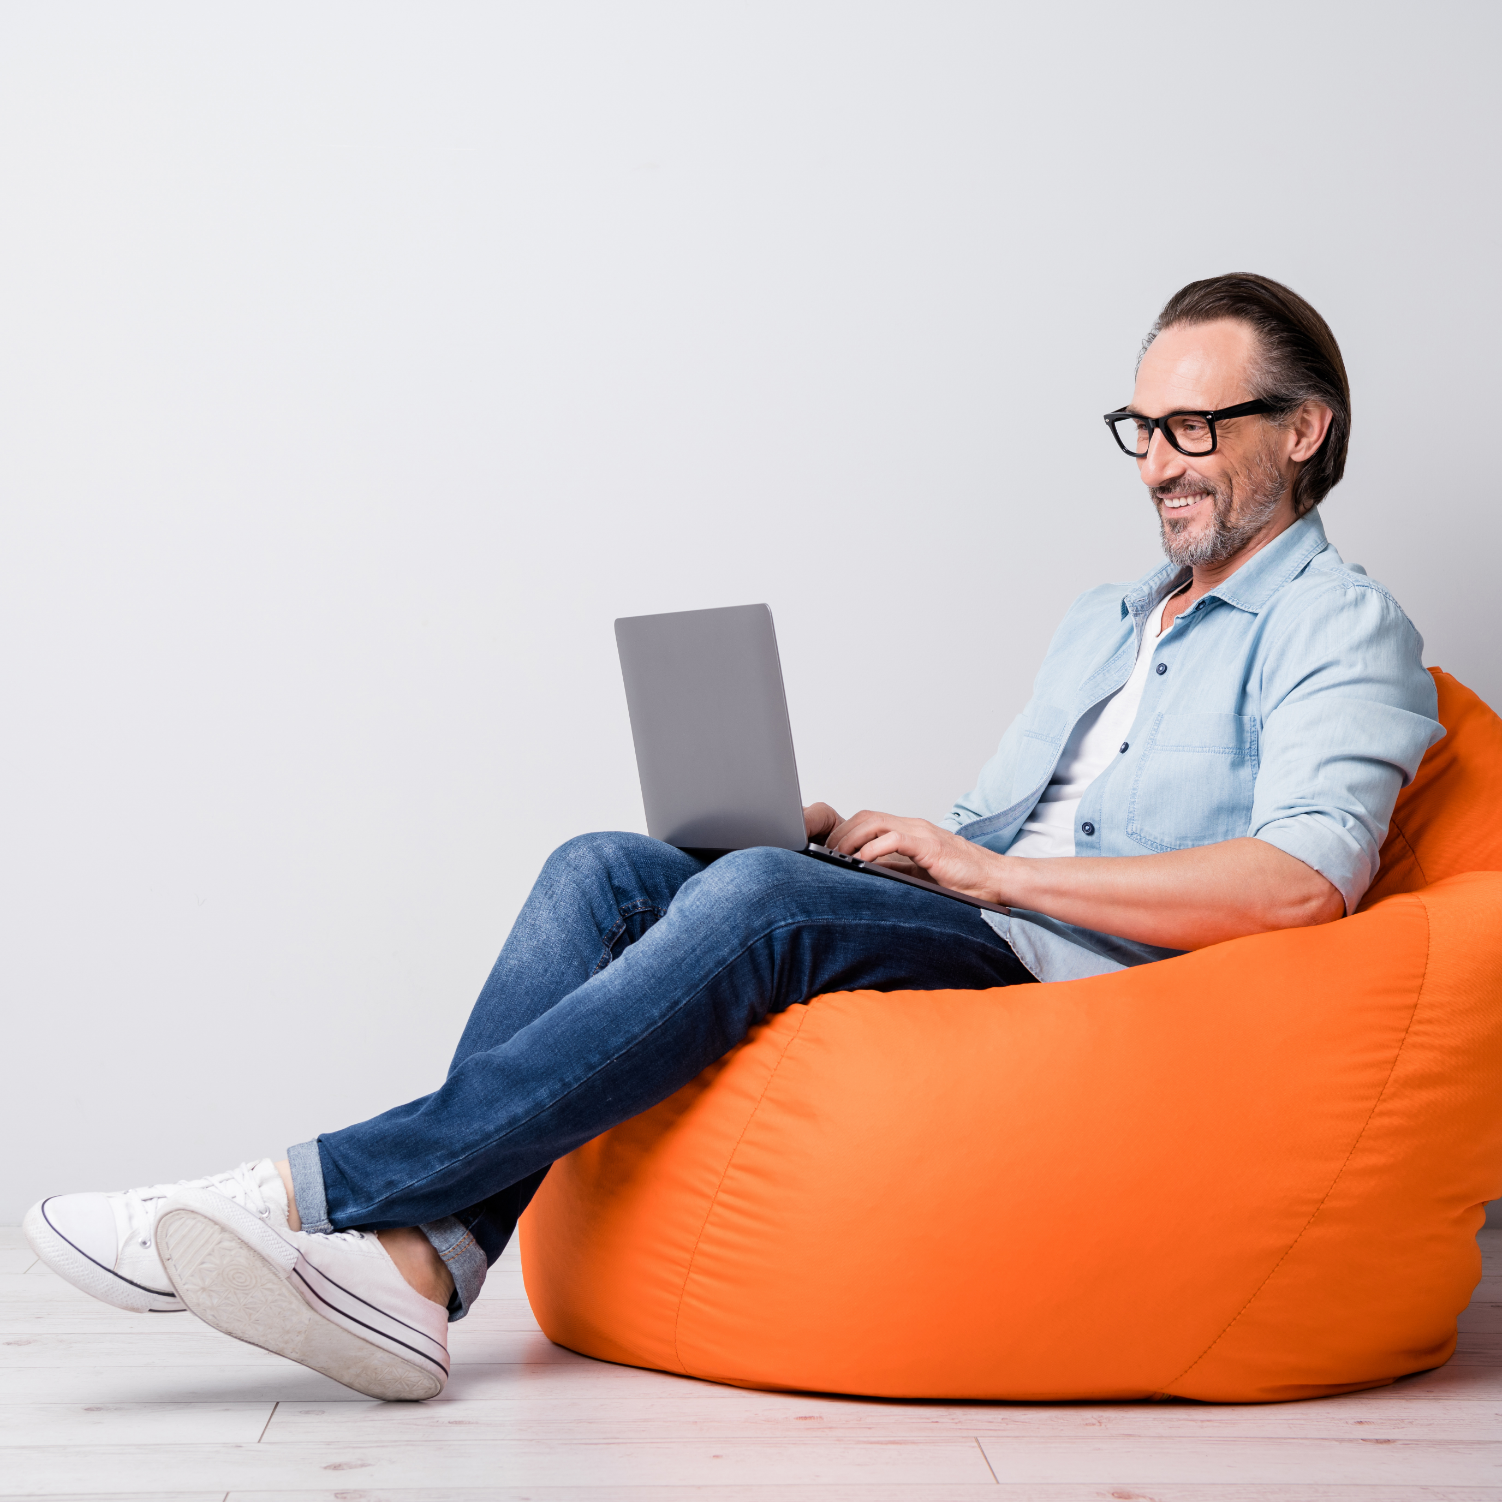 Smiling man sitting on orange beanbag working on his laptop computer.